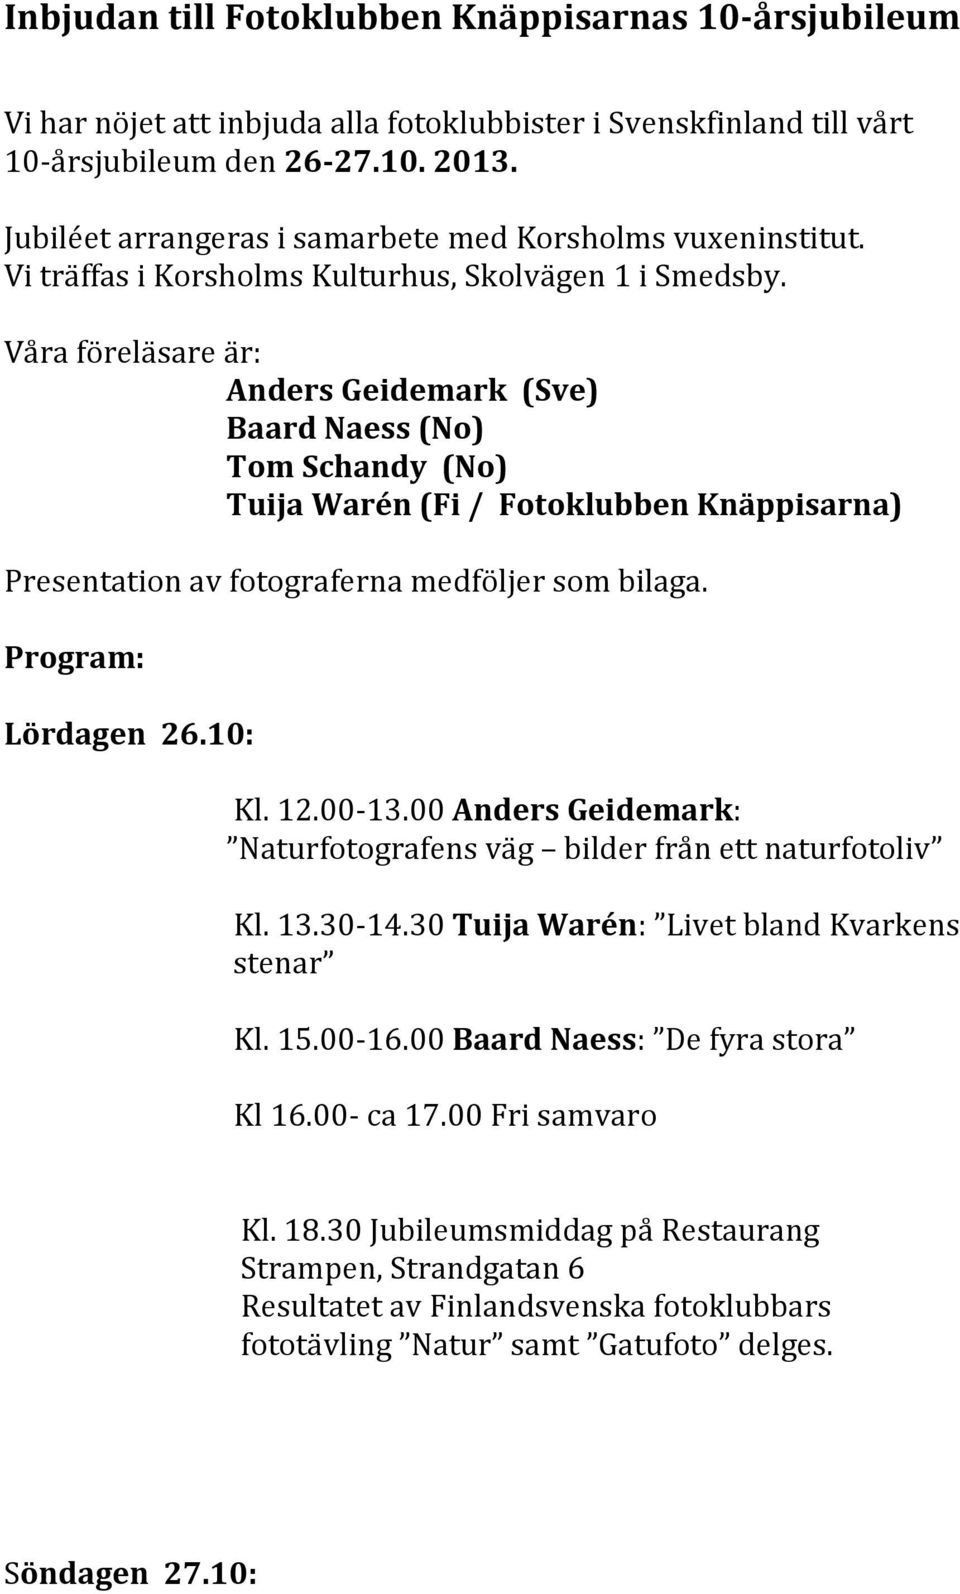 Våra föreläsare är: Anders Geidemark (Sve) Baard Naess (No) Tom Schandy (No) Tuija Warén (Fi / Fotoklubben Knäppisarna) Presentation av fotograferna medföljer som bilaga. Program: Lördagen 26.10: Kl.